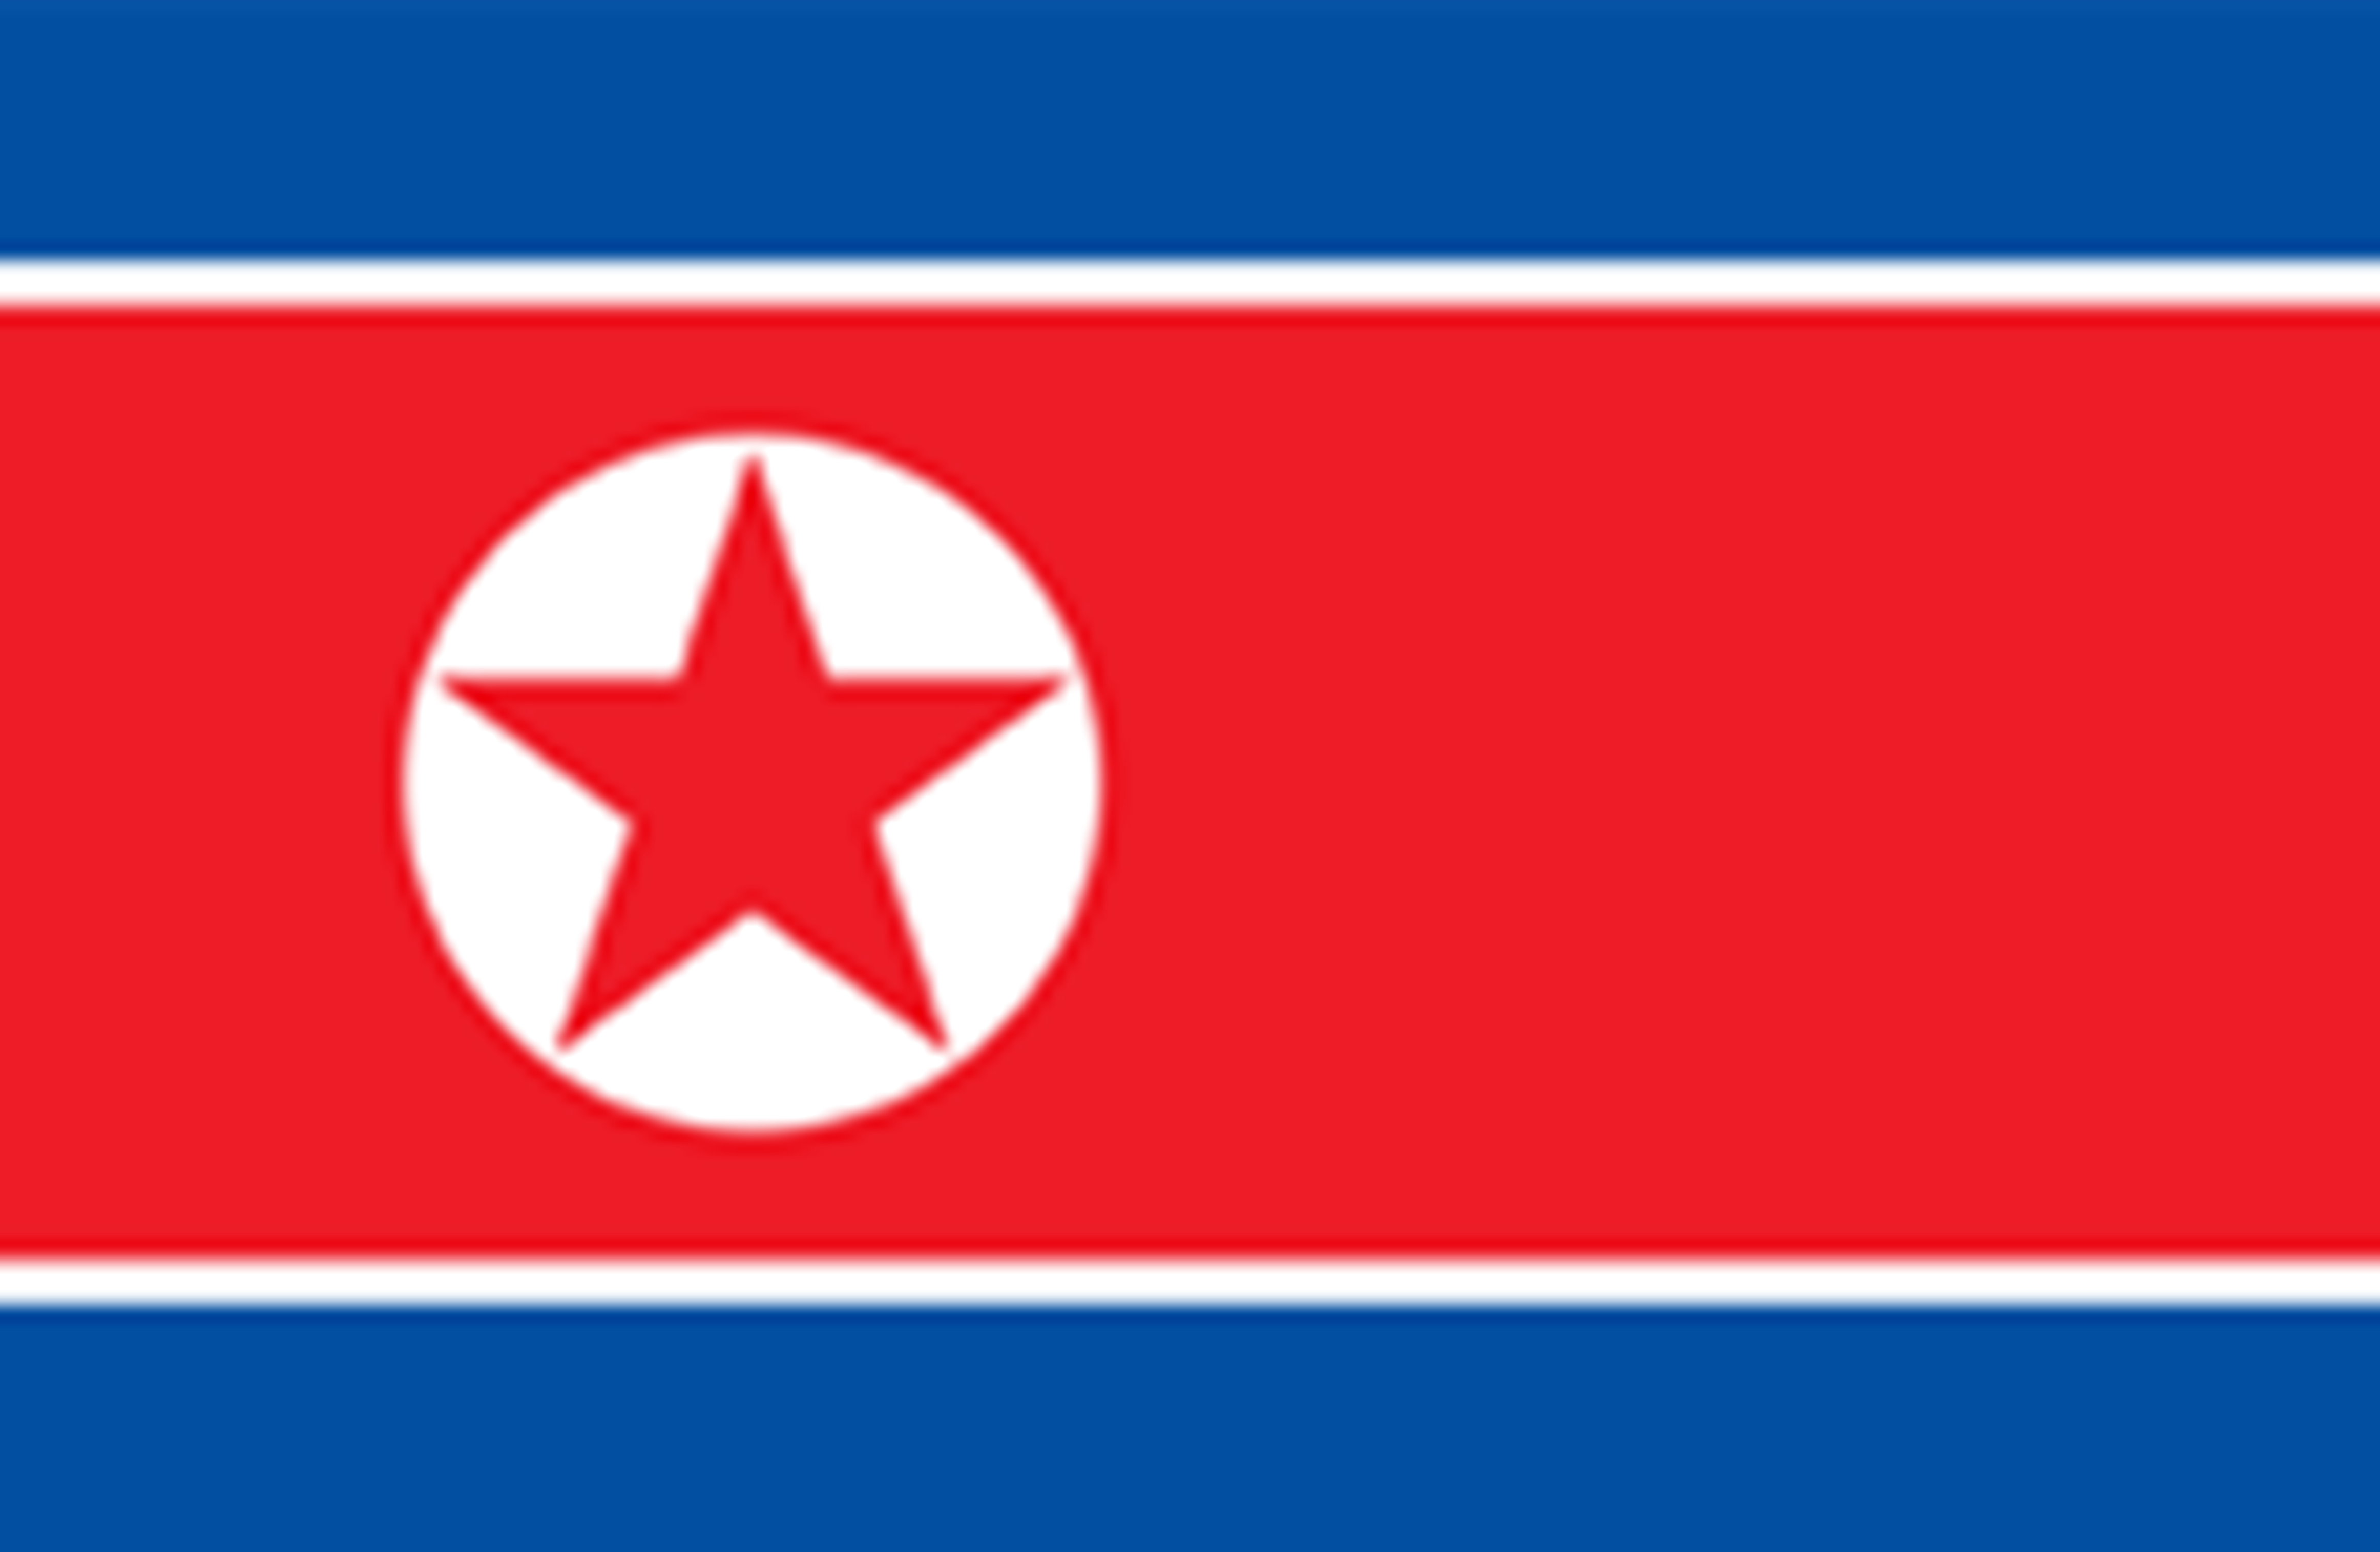 צפון קוריאה